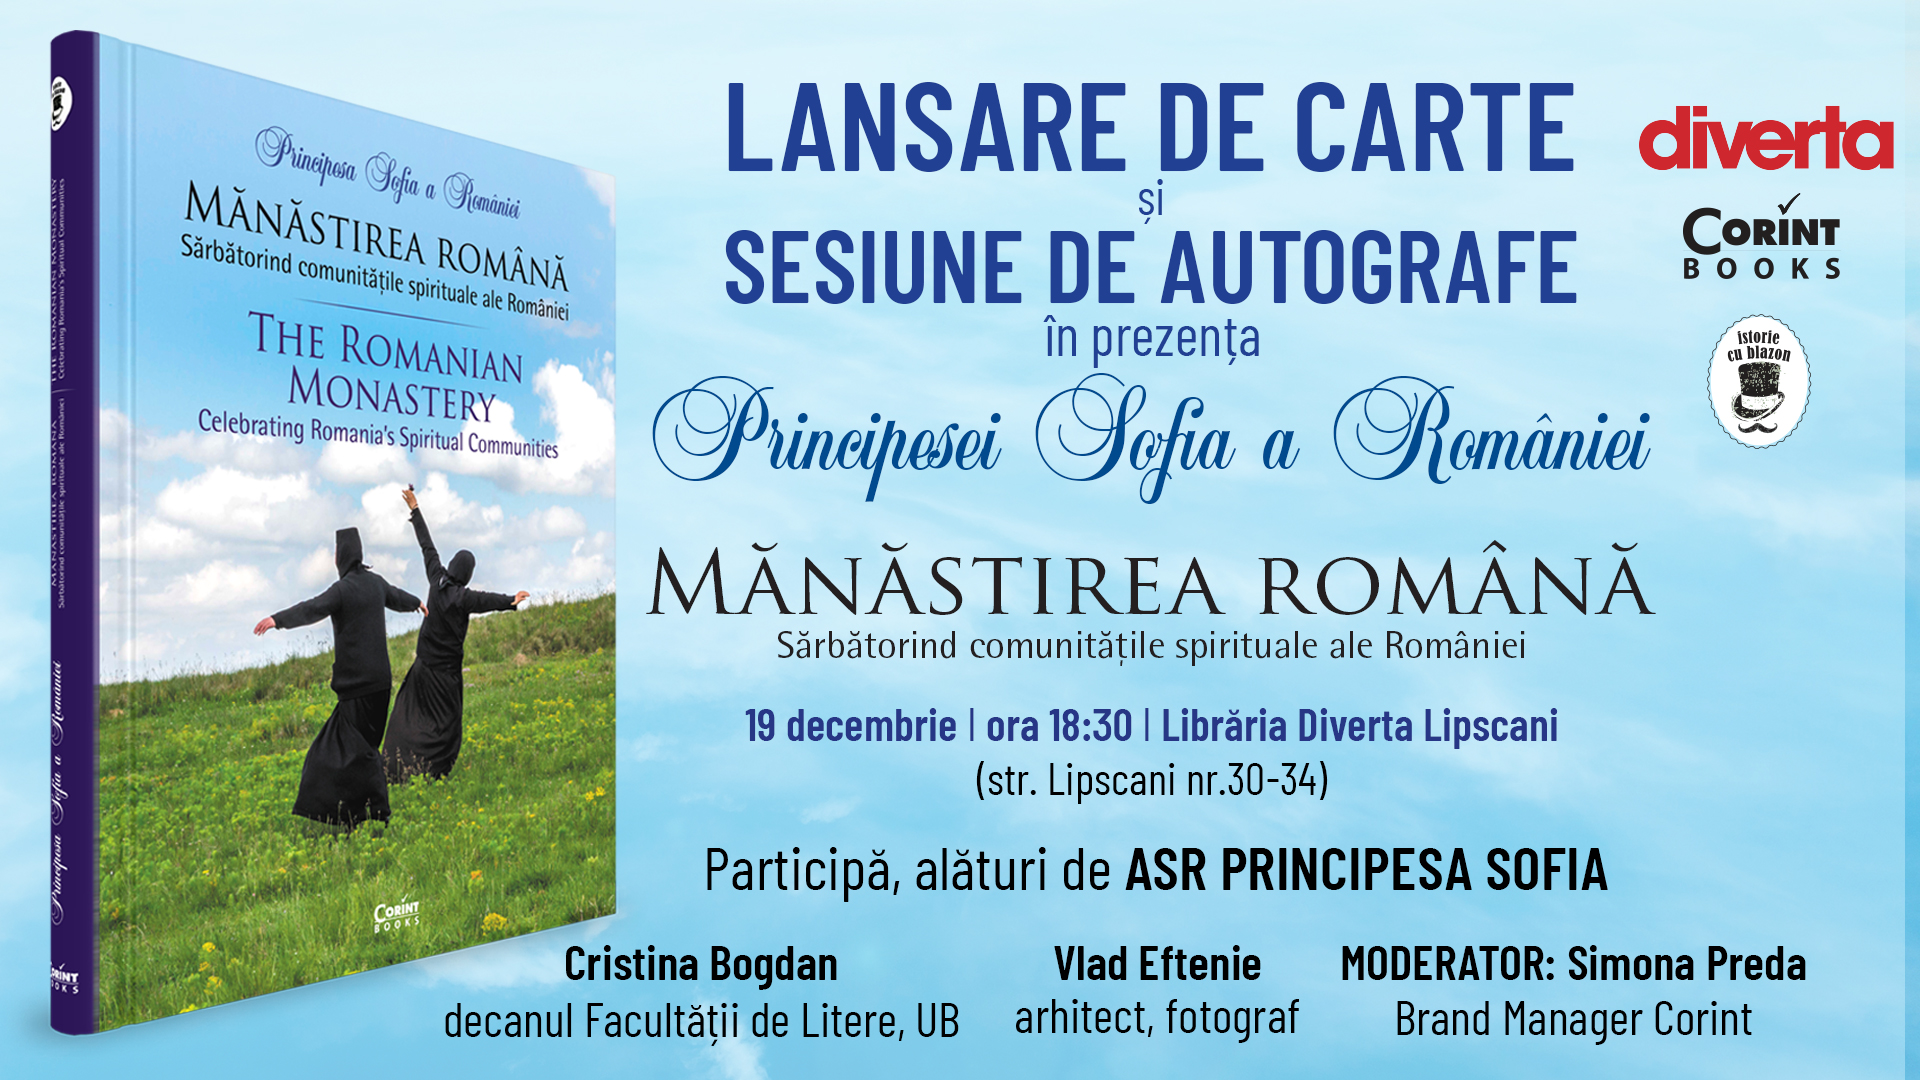 Eveniment regal: sesiune de autografe cu ASR Principesa Sofia a României, autoarea volumului „Mănăstirea română”